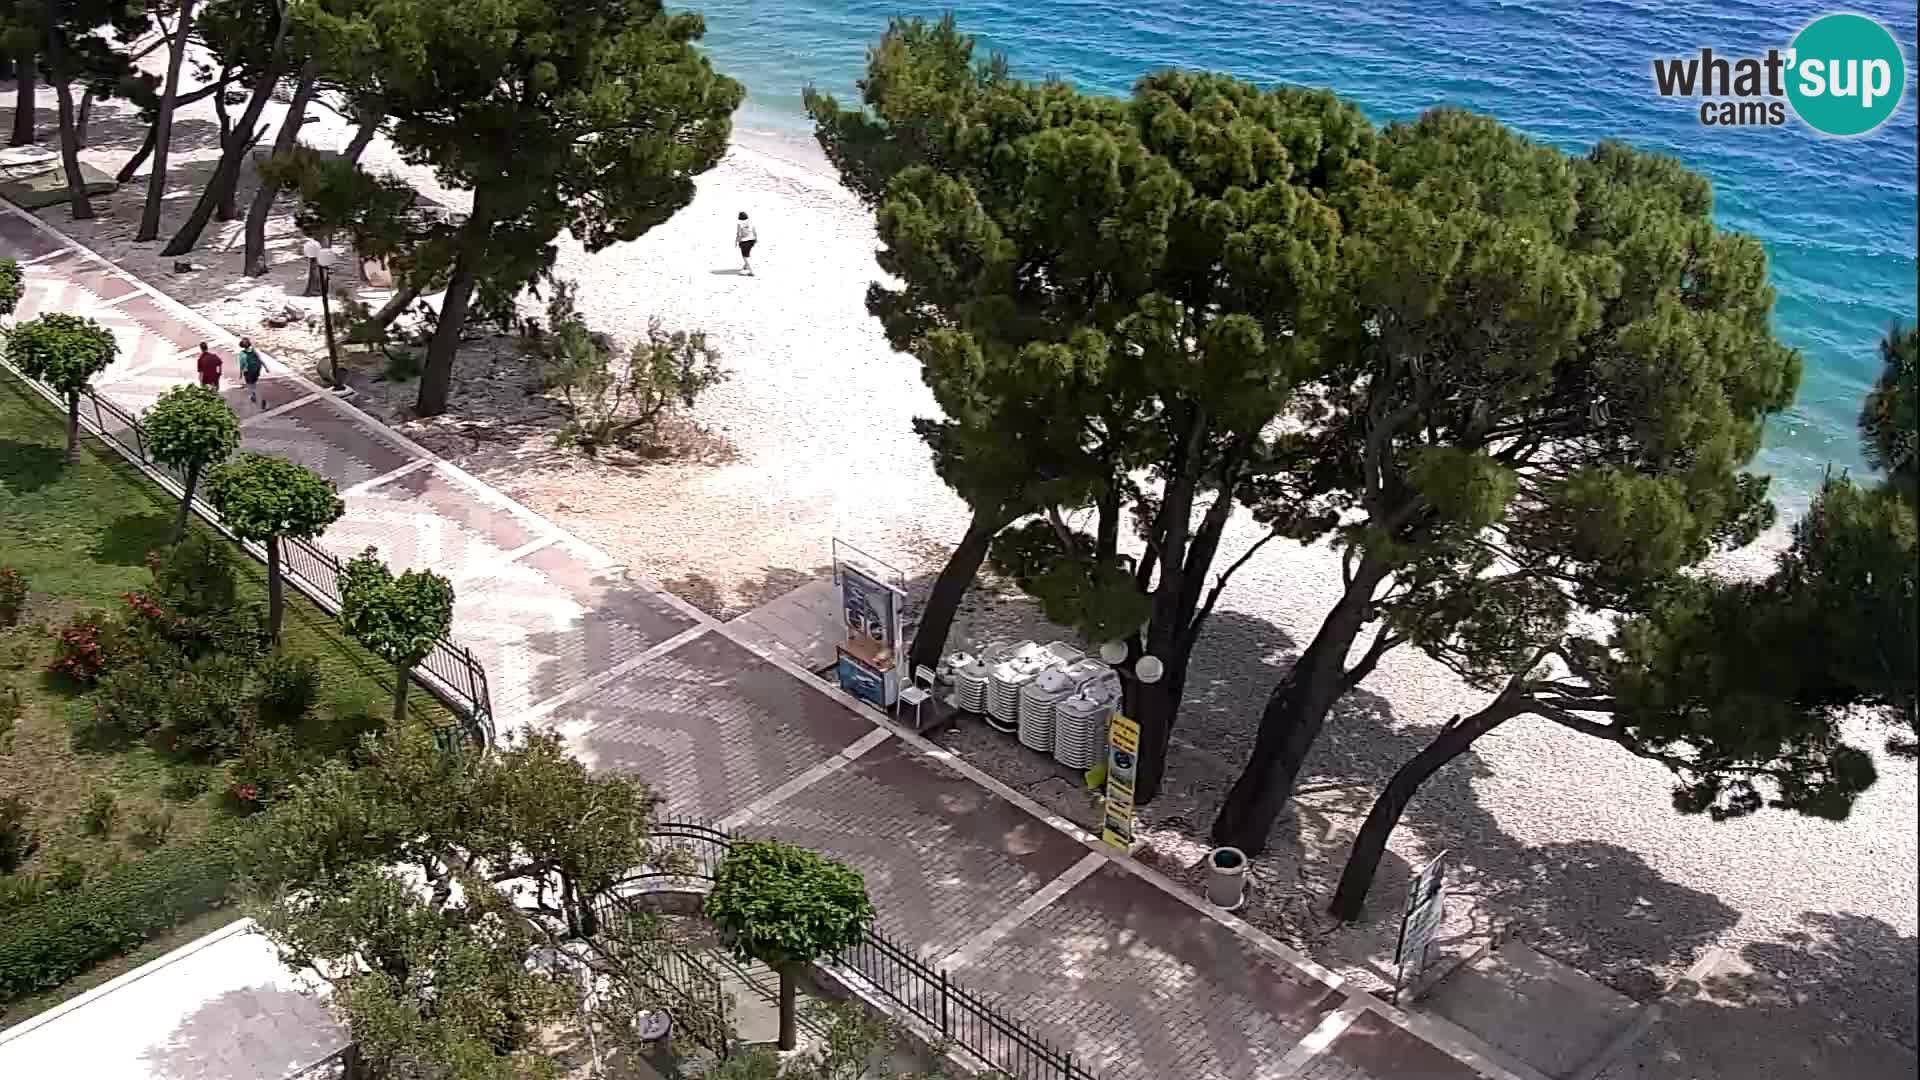 Camera en vivo Tučepi – Hotel Tamaris – Croacia